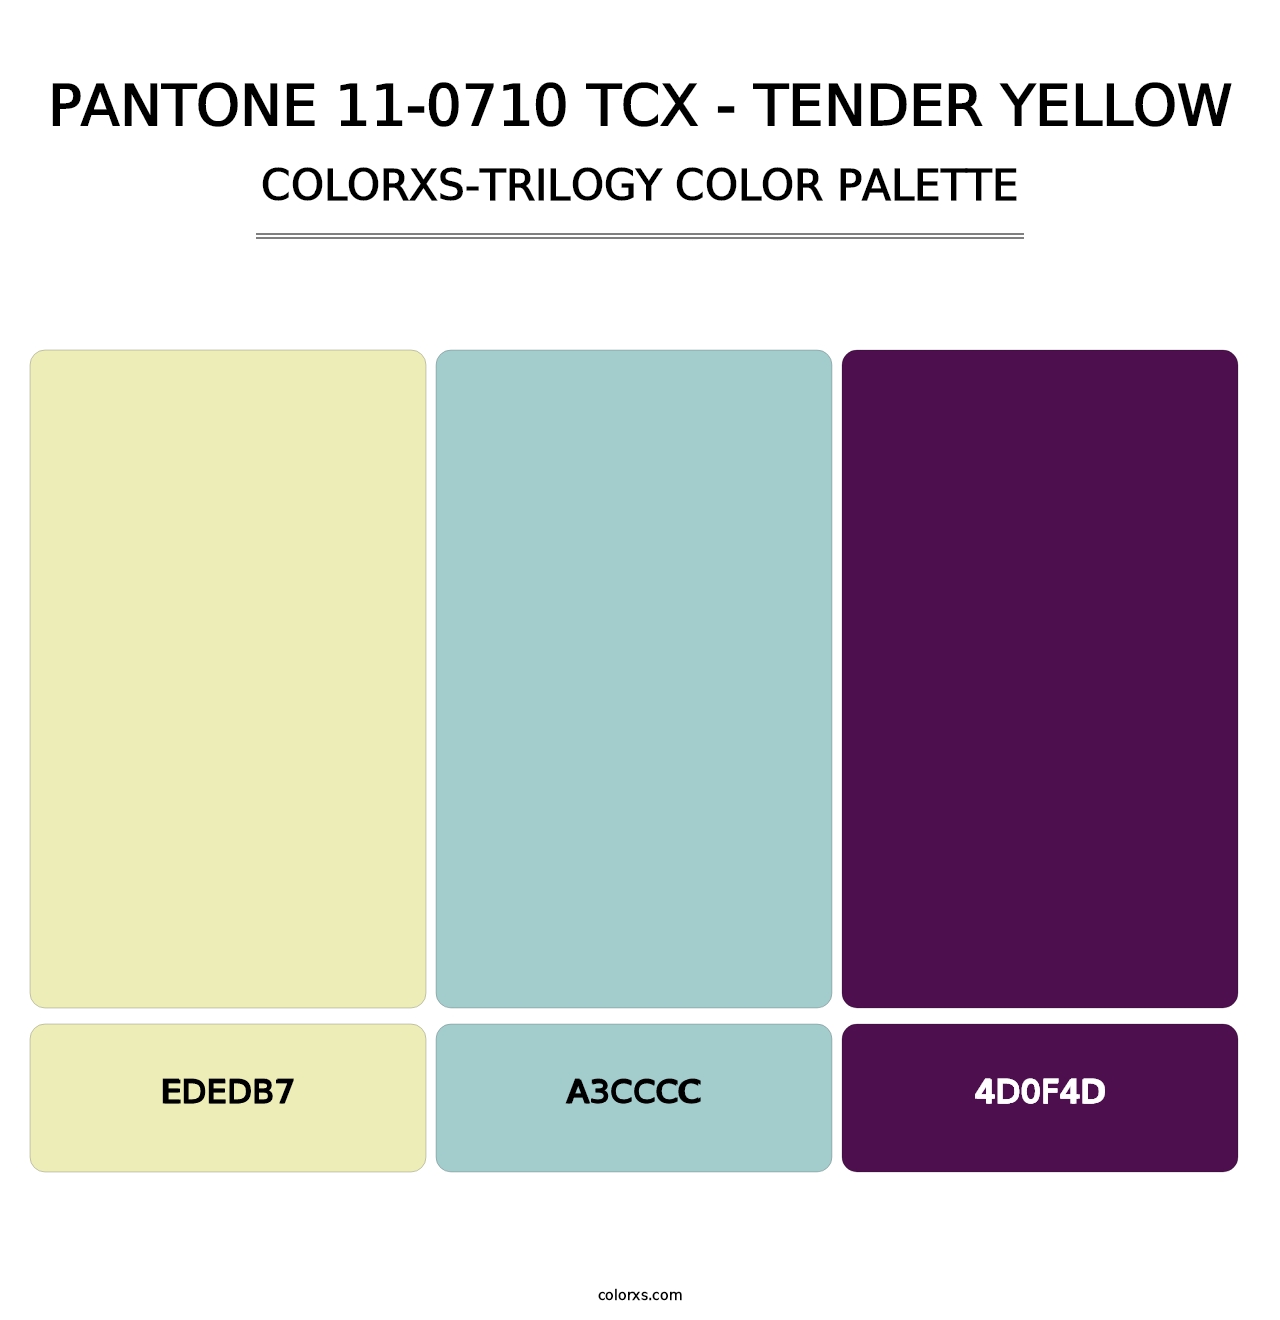 PANTONE 11-0710 TCX - Tender Yellow - Colorxs Trilogy Palette